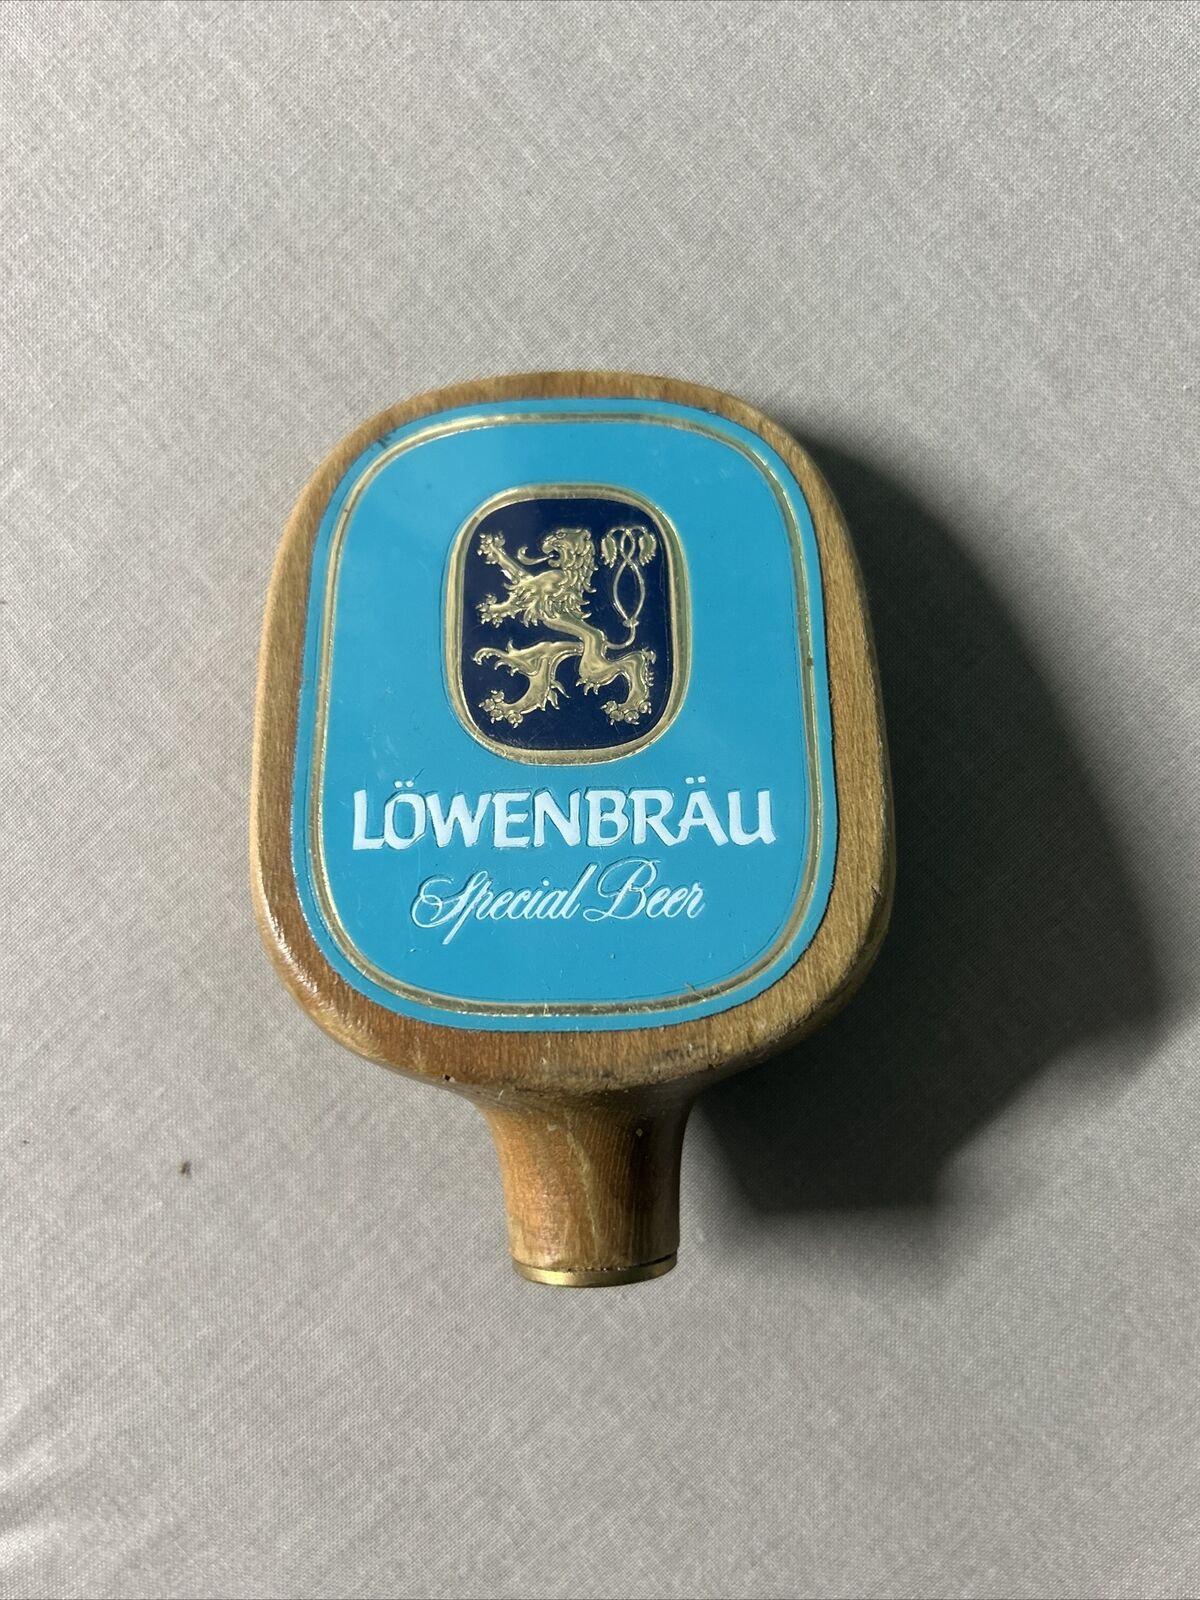 Vintage Lowenbrau Special Beer Tap Knob Approx 4” Long